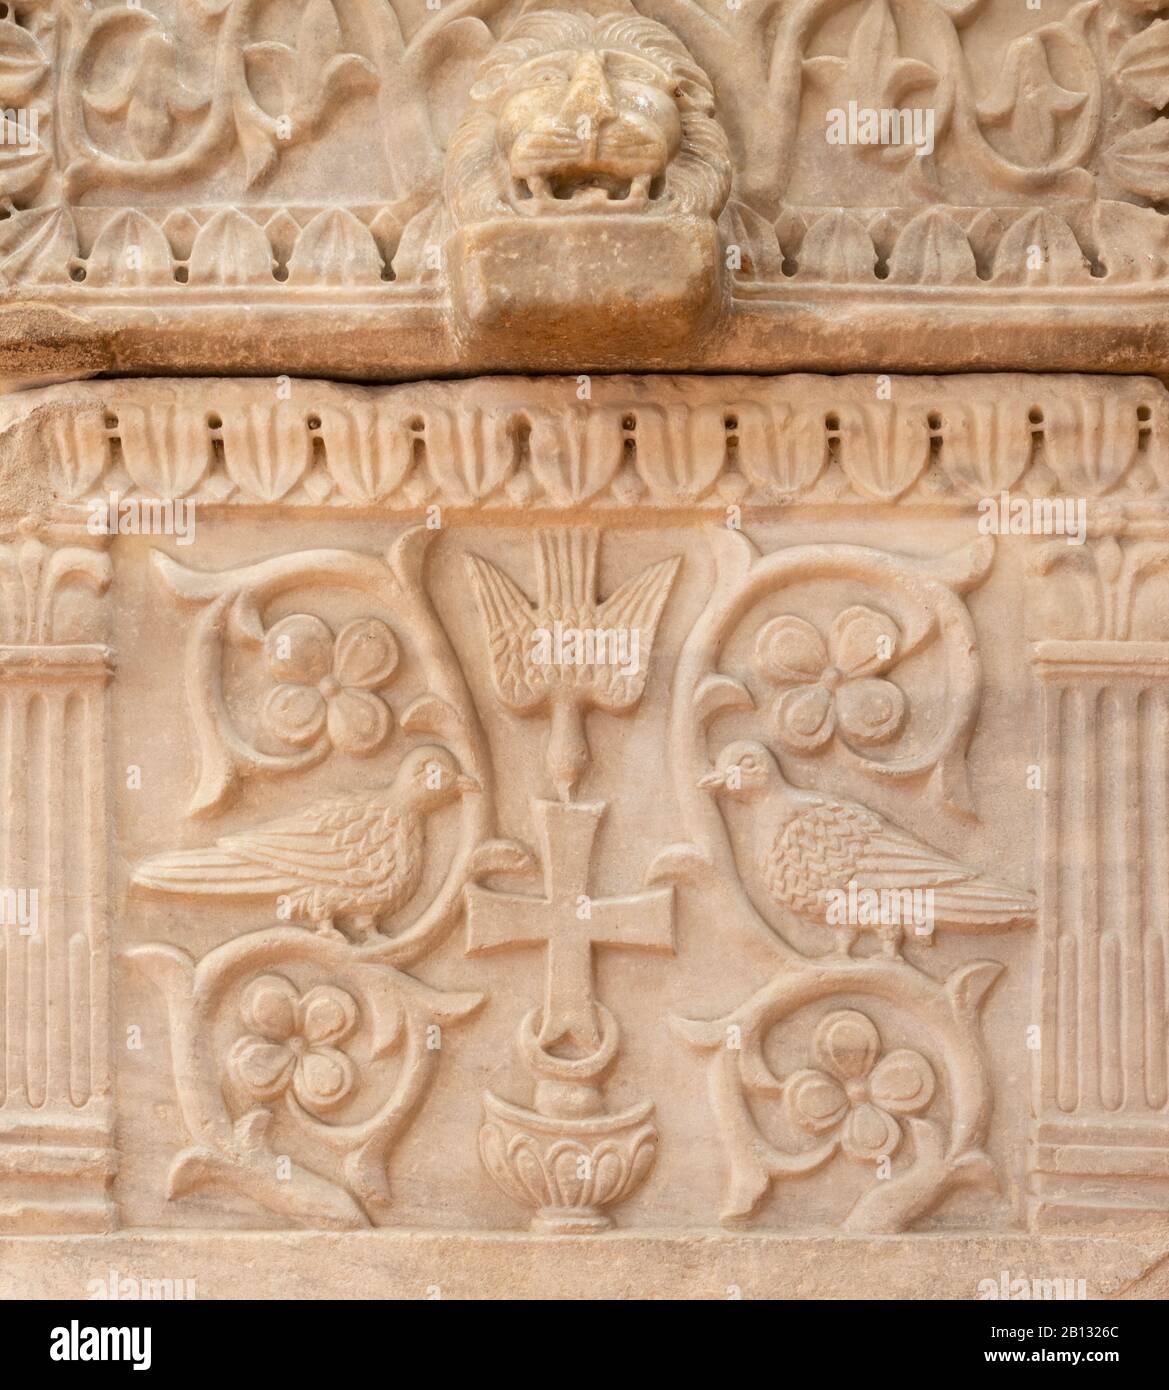 RAVENNA, ITALIEN - 29. JANUAR 2020: Das Detail des frühchristlichen Grabes in der Kirche Basilika Sant Apolinare in Classe mit dem Paradies symbolisch. Stockfoto